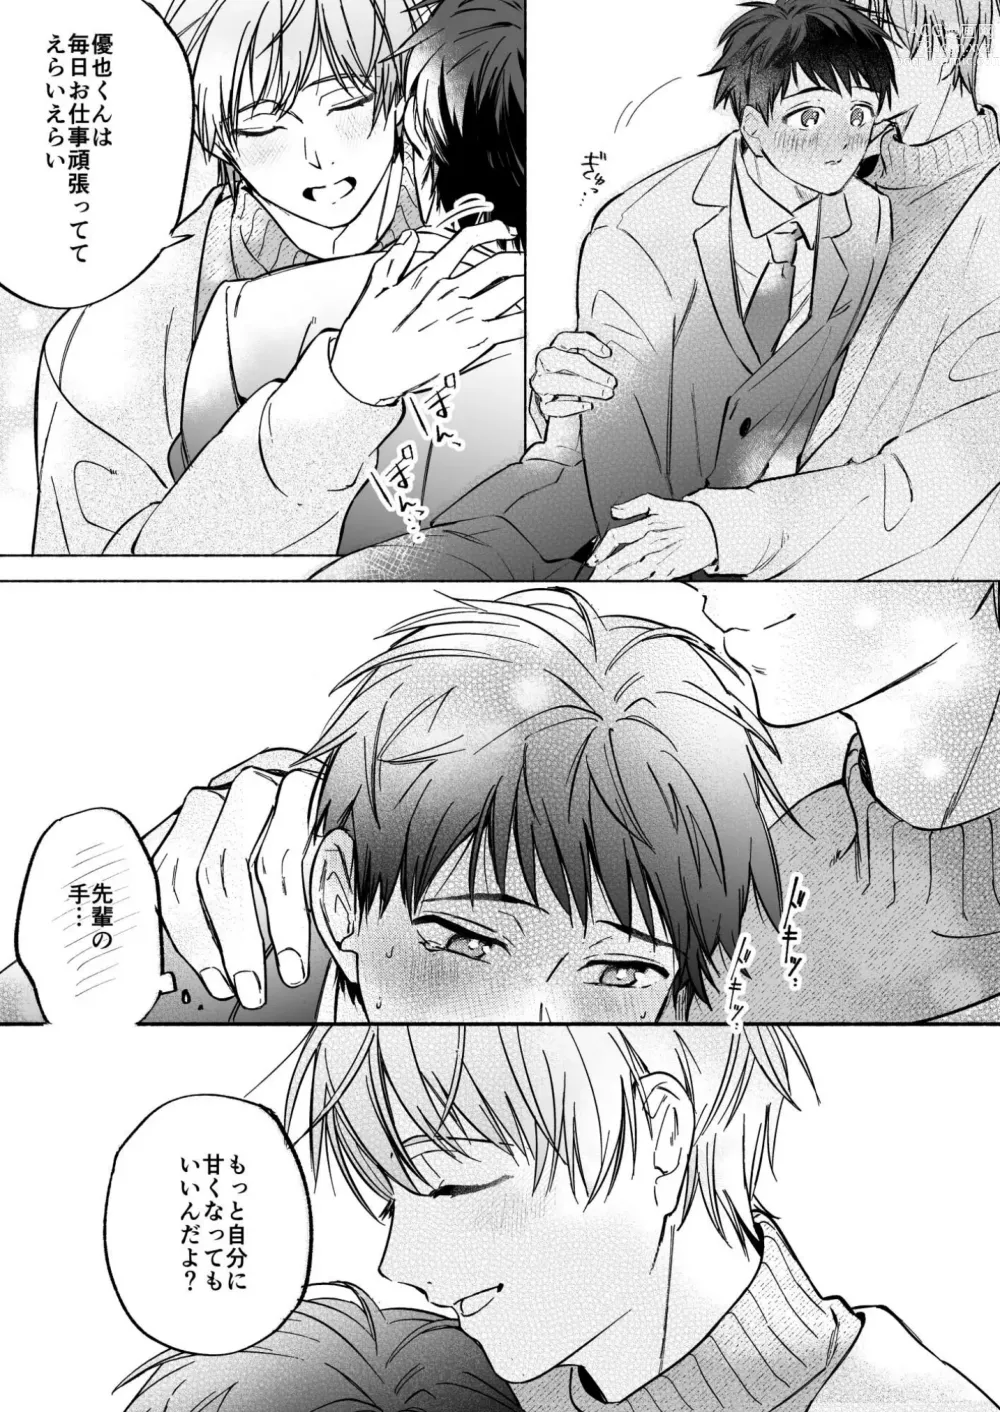 Page 9 of doujinshi Shachiku Salaryman toro ama yoshiyoshi Ecchi